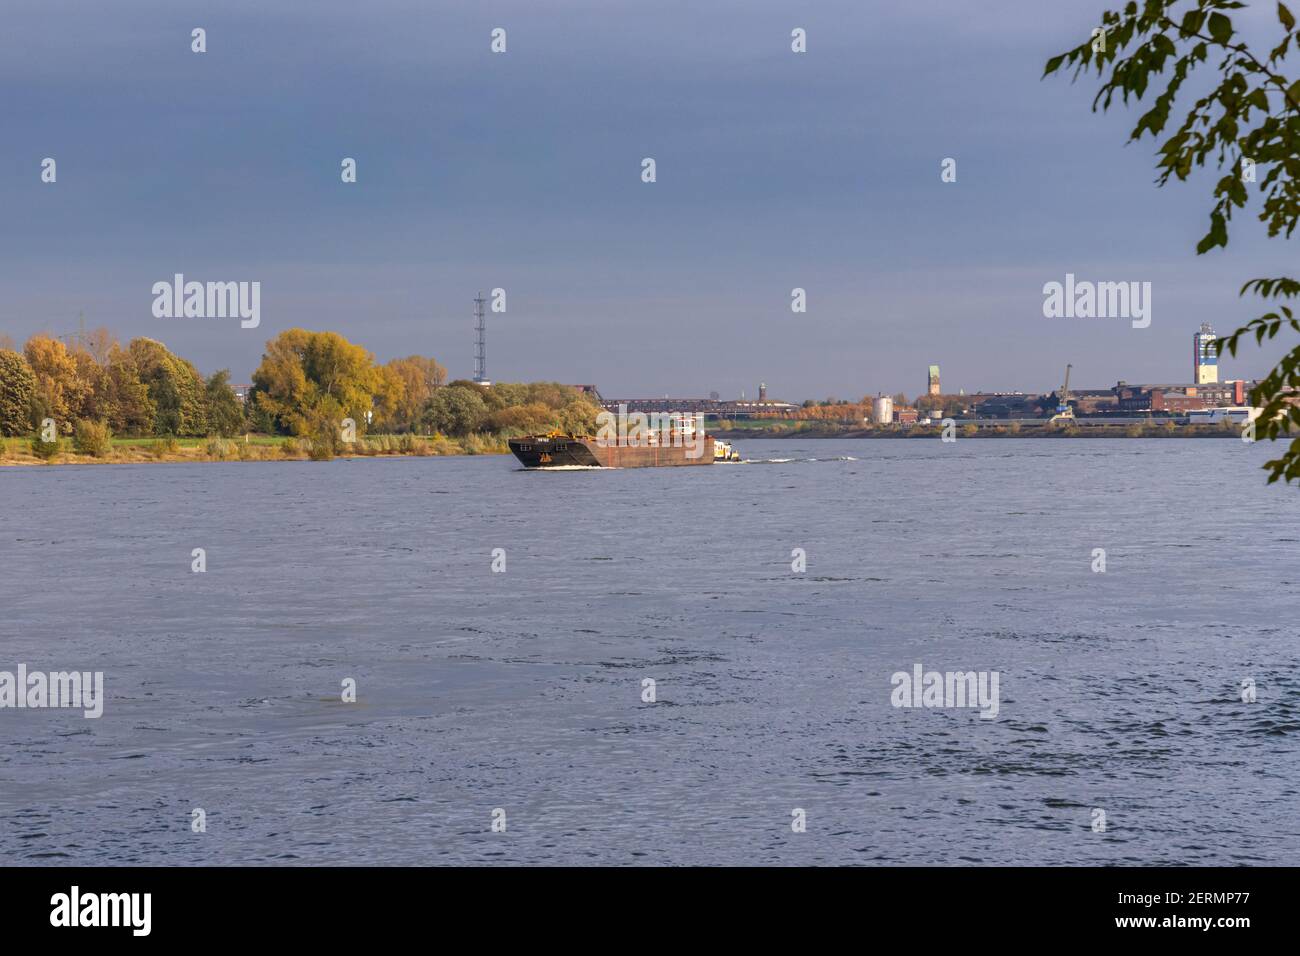 Duisburg, North Rhine-Westfalia, Germany - November 11, 2019: Ships on the River Rhine, seen from the Rheinpromenade Wanheim Stock Photo